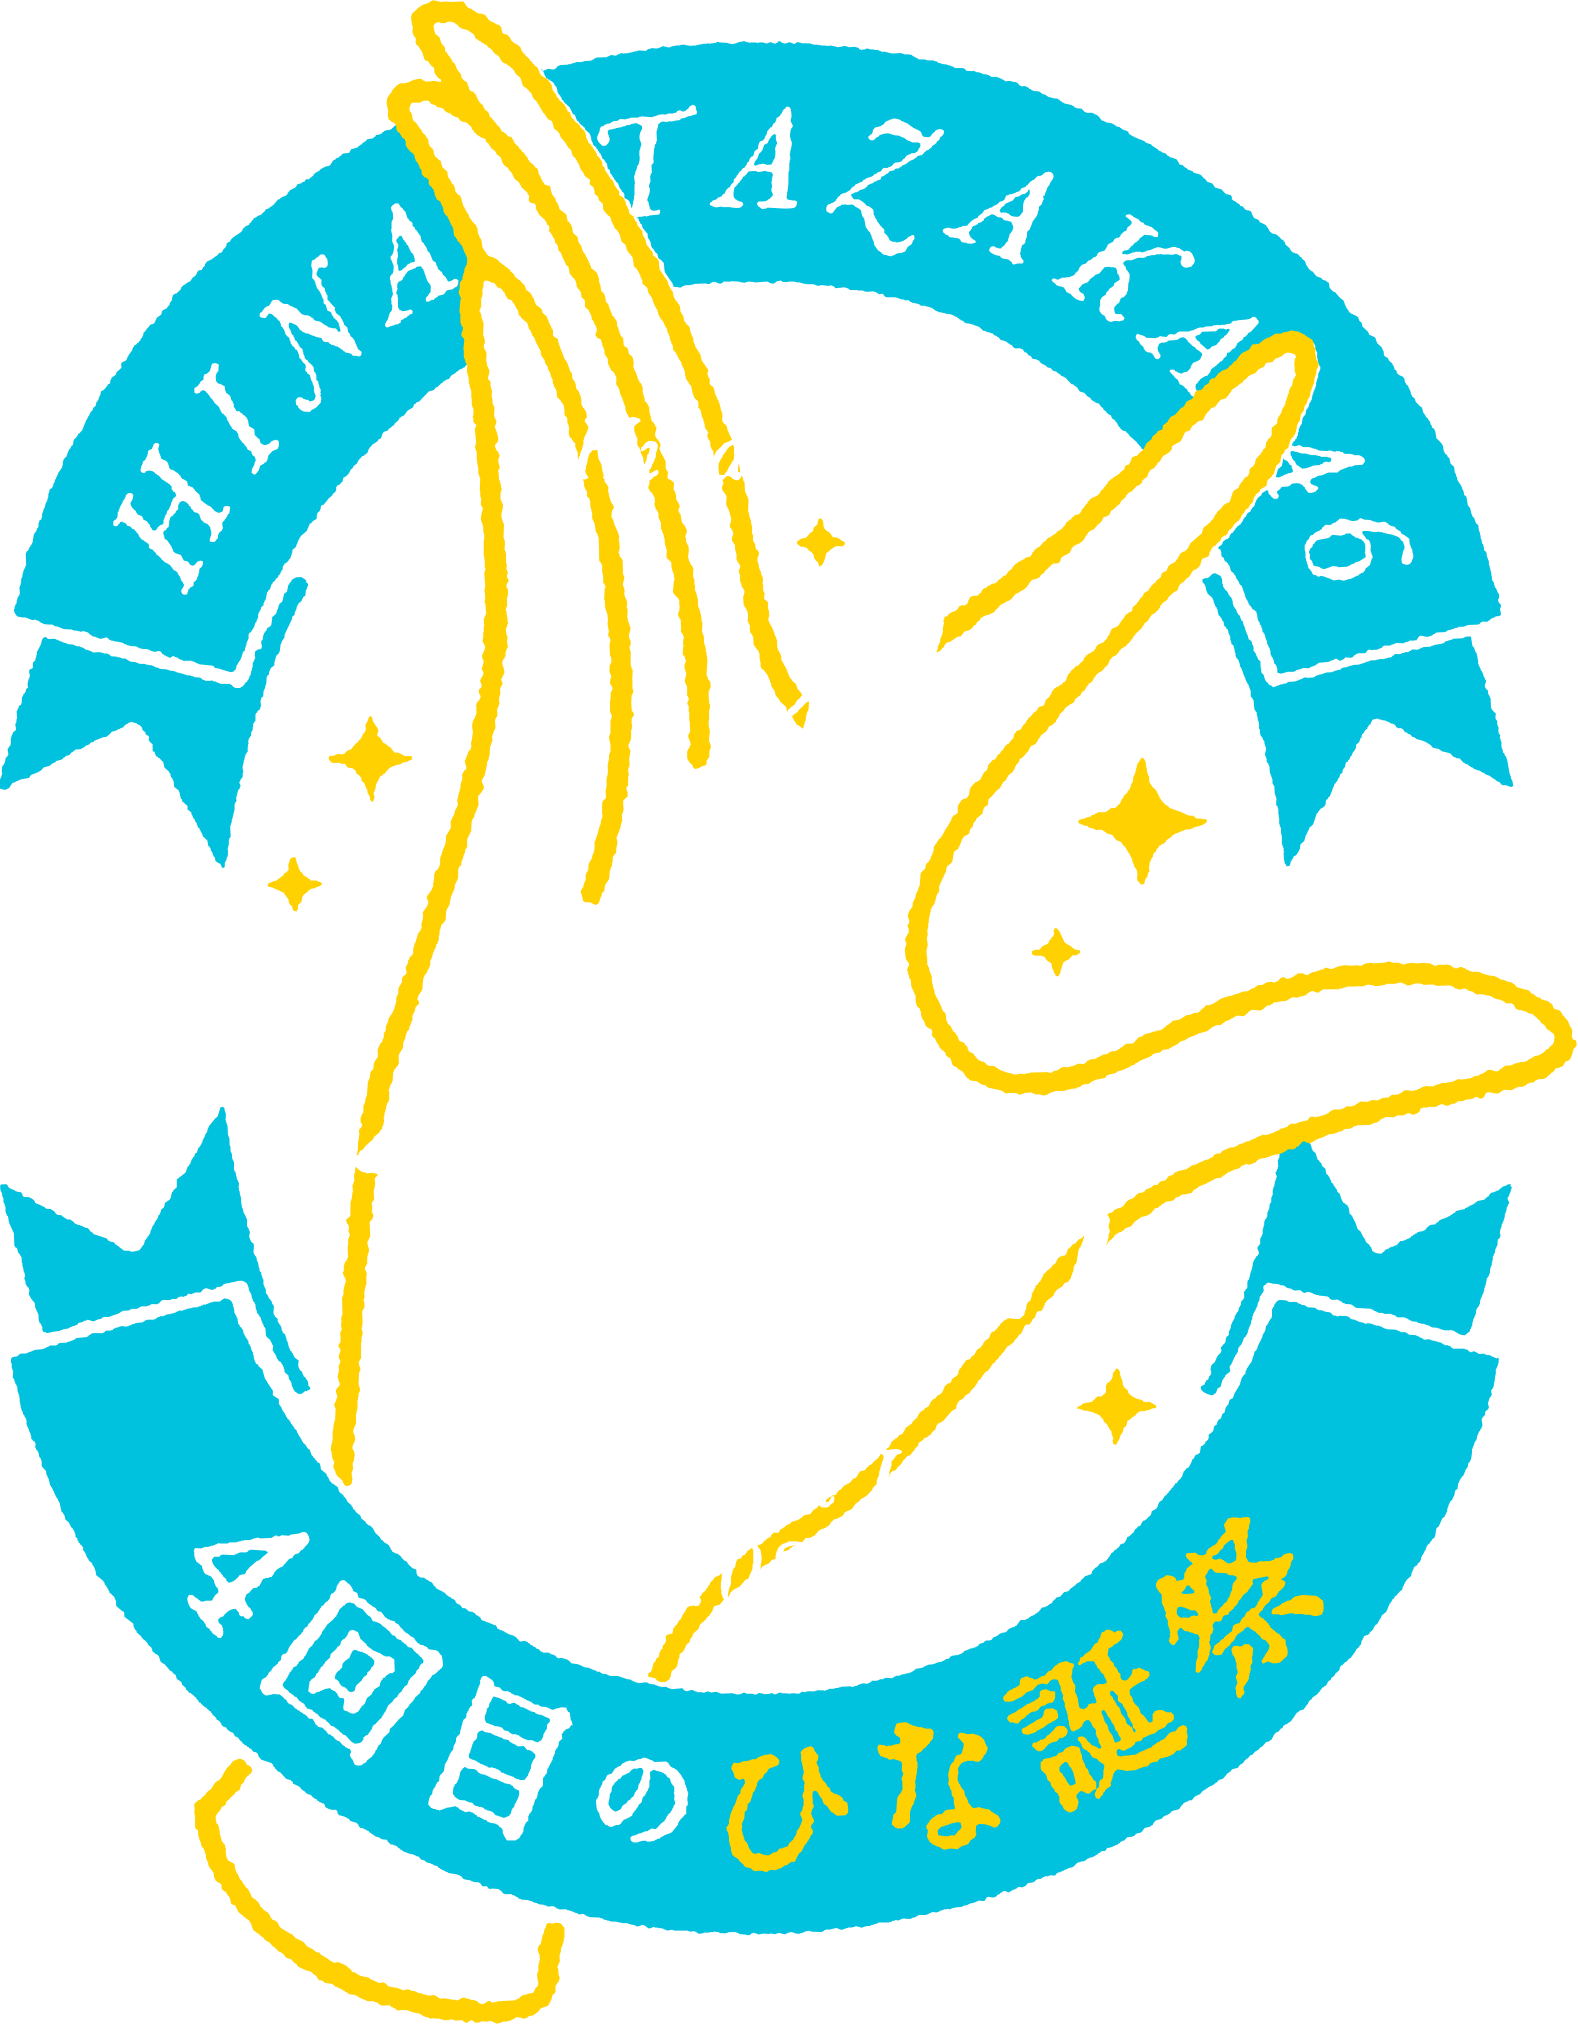 日向坂46 DVD&Blu-ray『4周年記念MEMORIAL LIVE ～4回目のひな誕